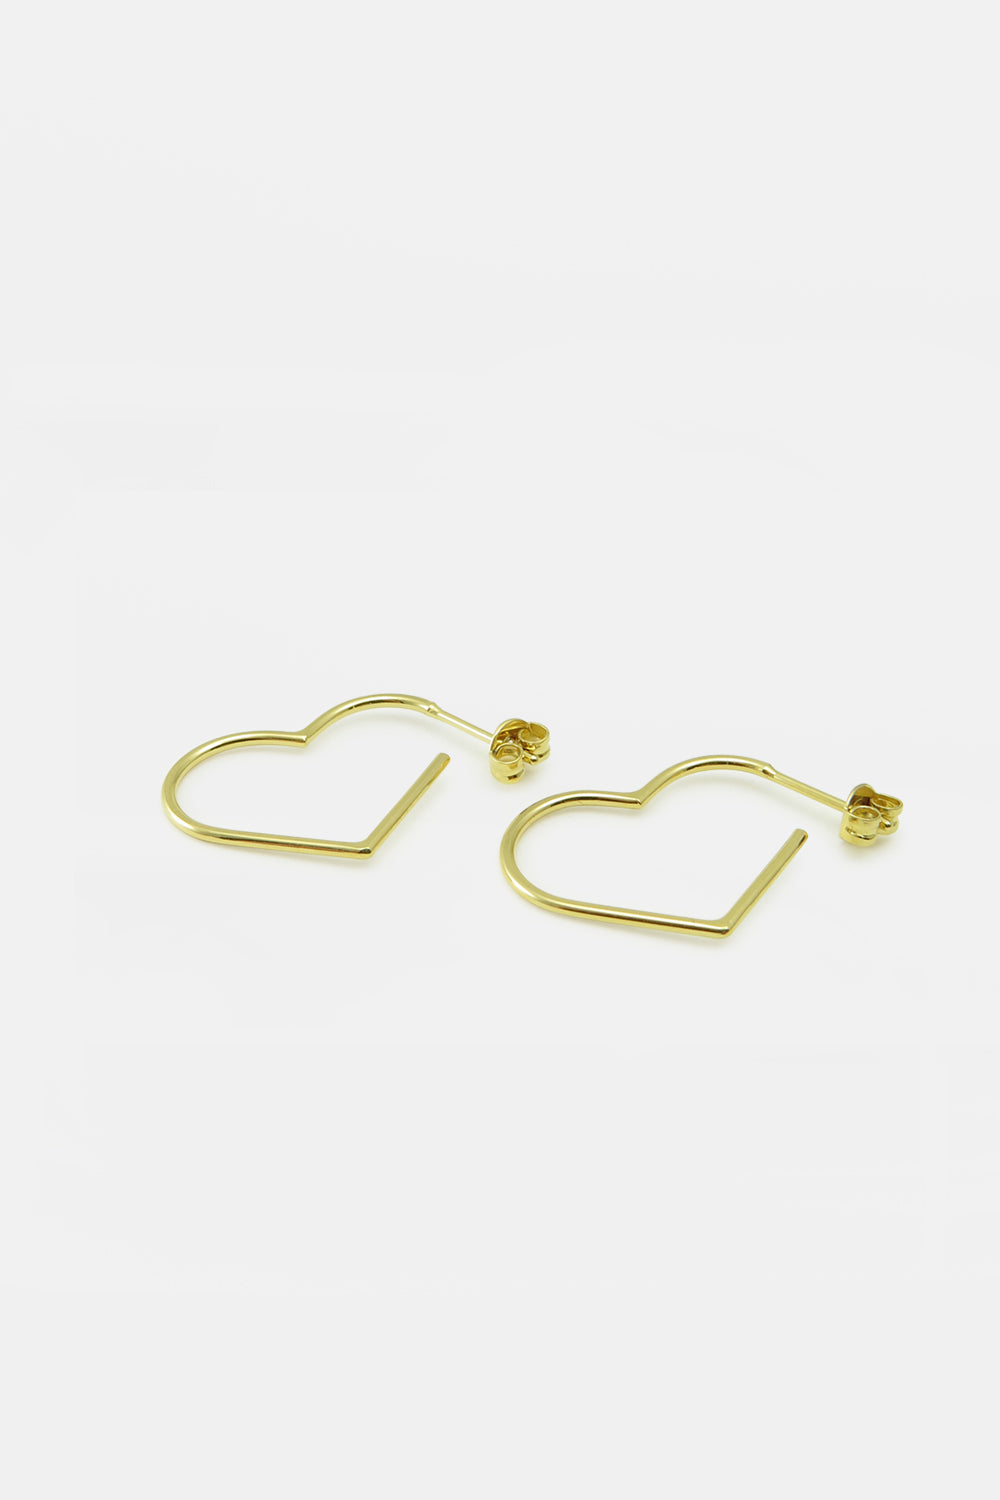 Wire heart earrings with earpin